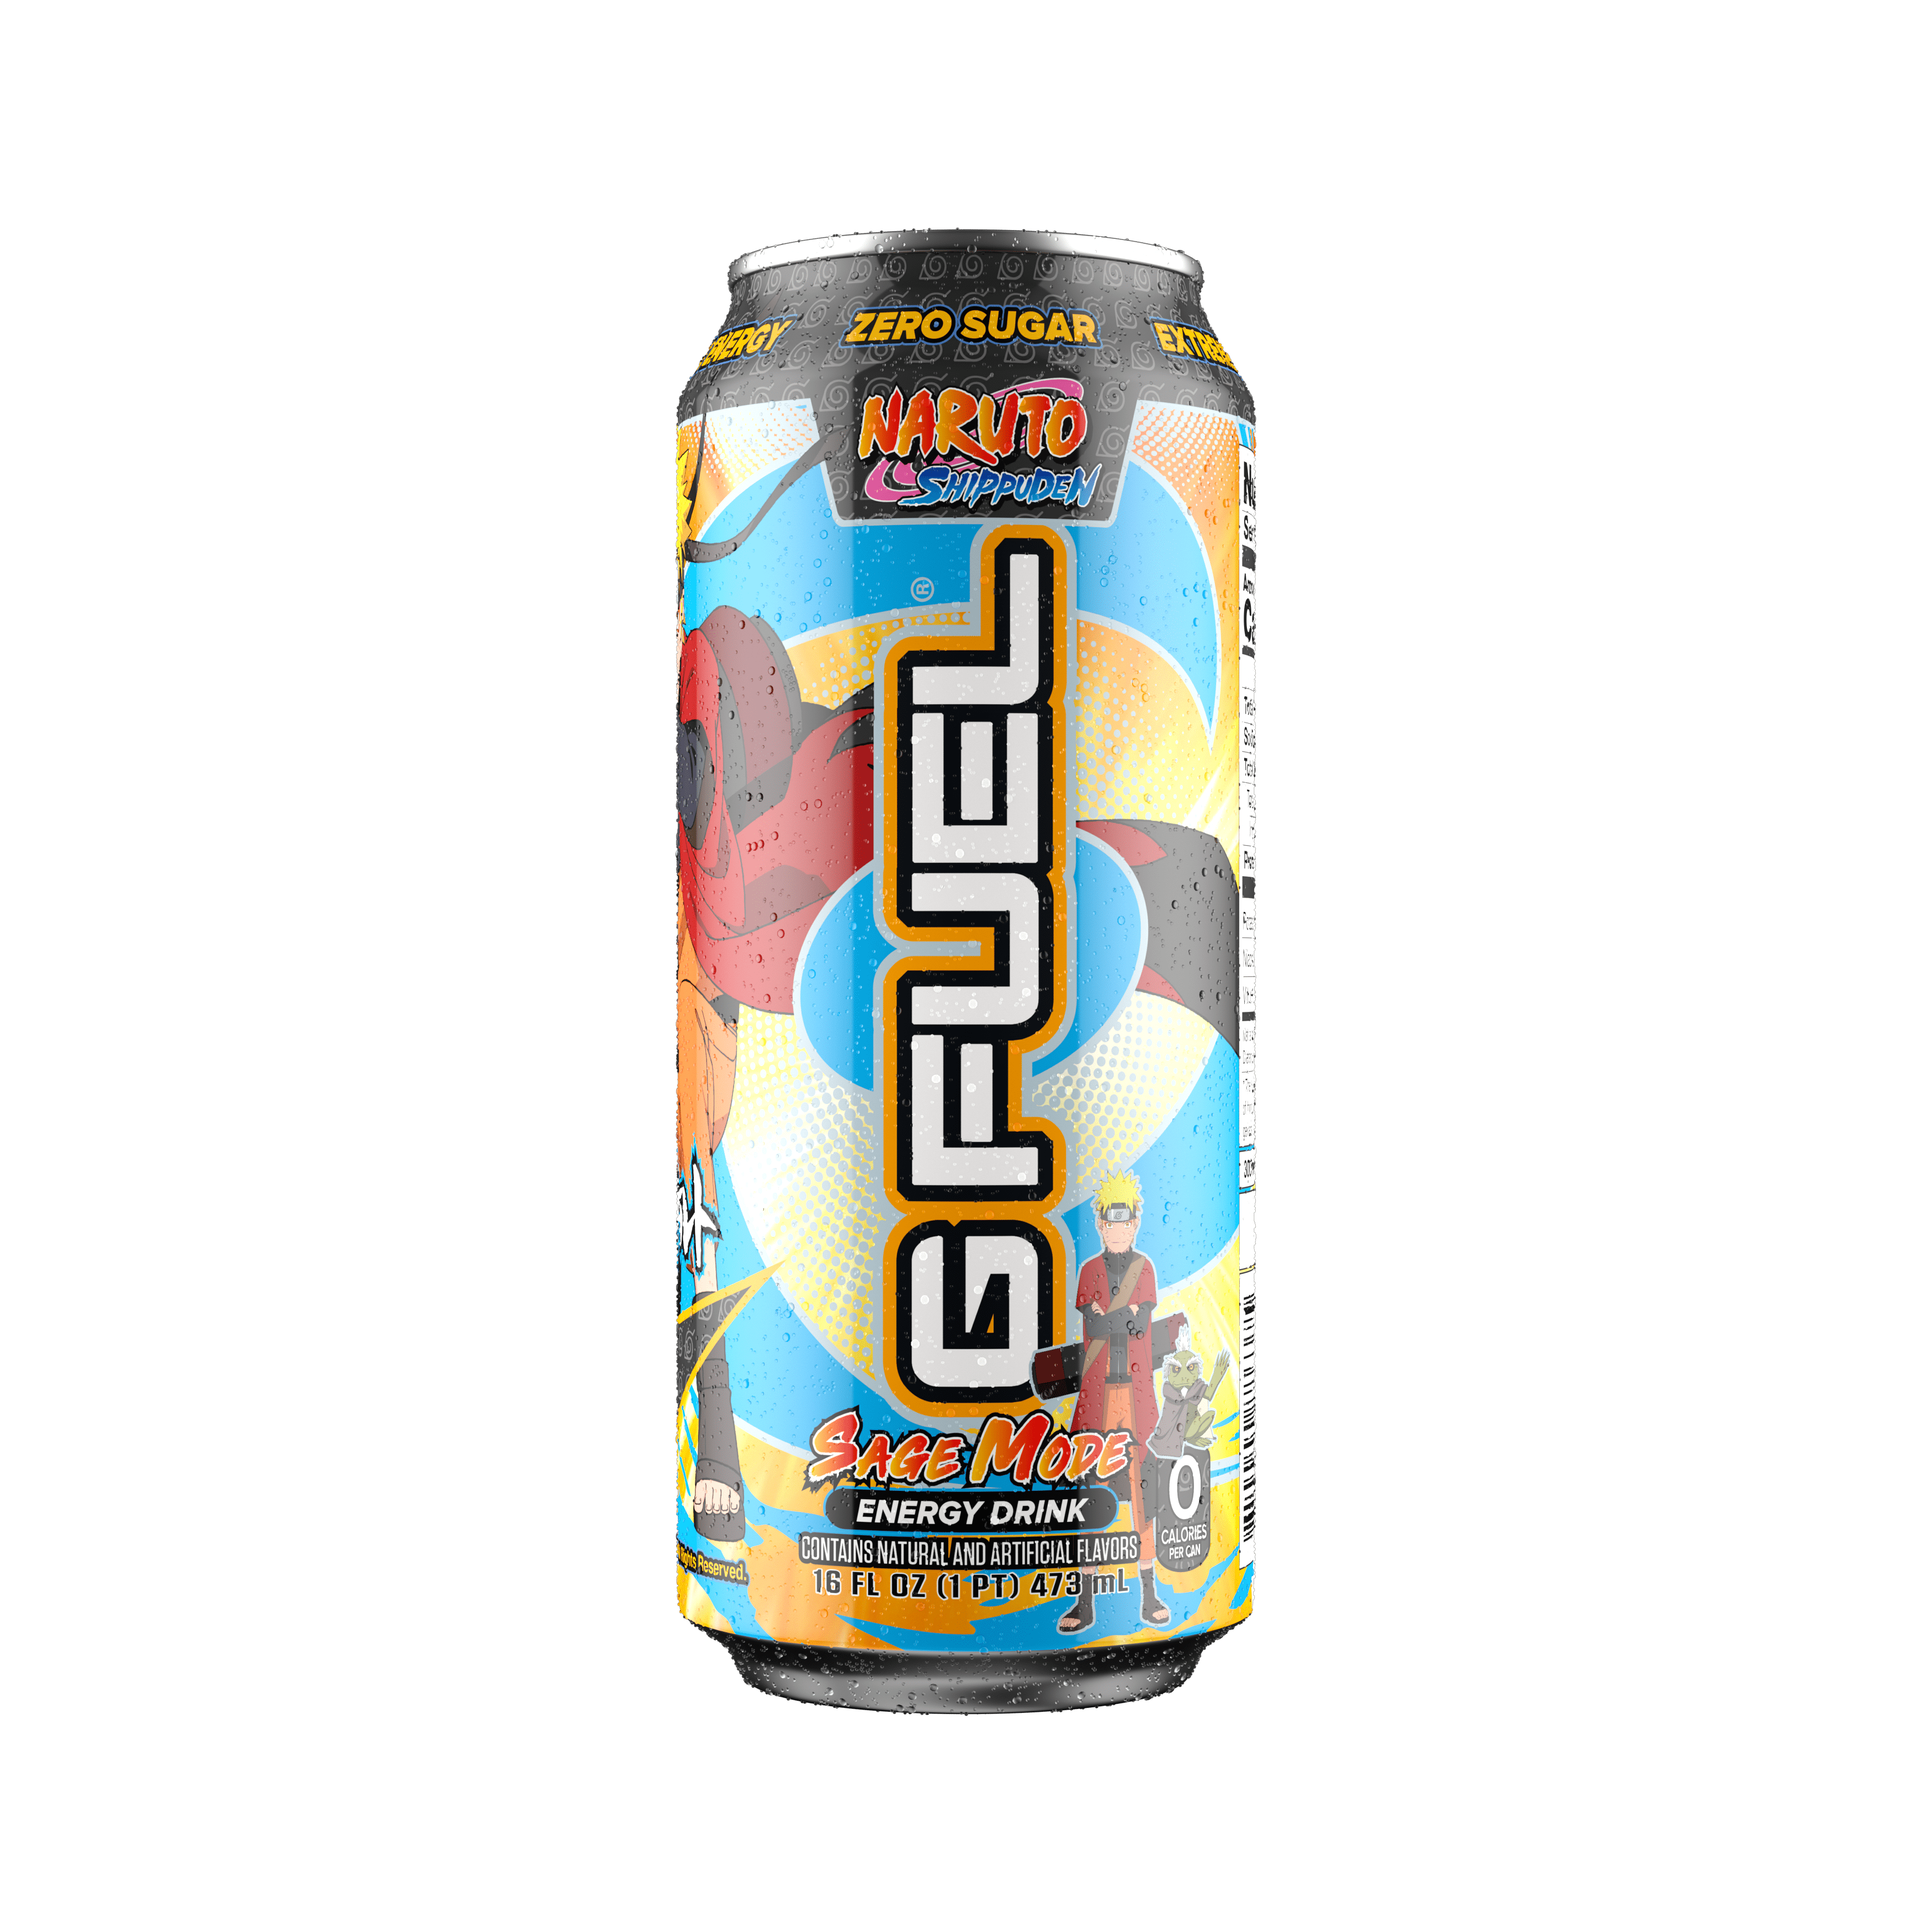 GFUEL Can Saga Mode Naruto Anime Ninja Energy Drink G Fuel | eBay